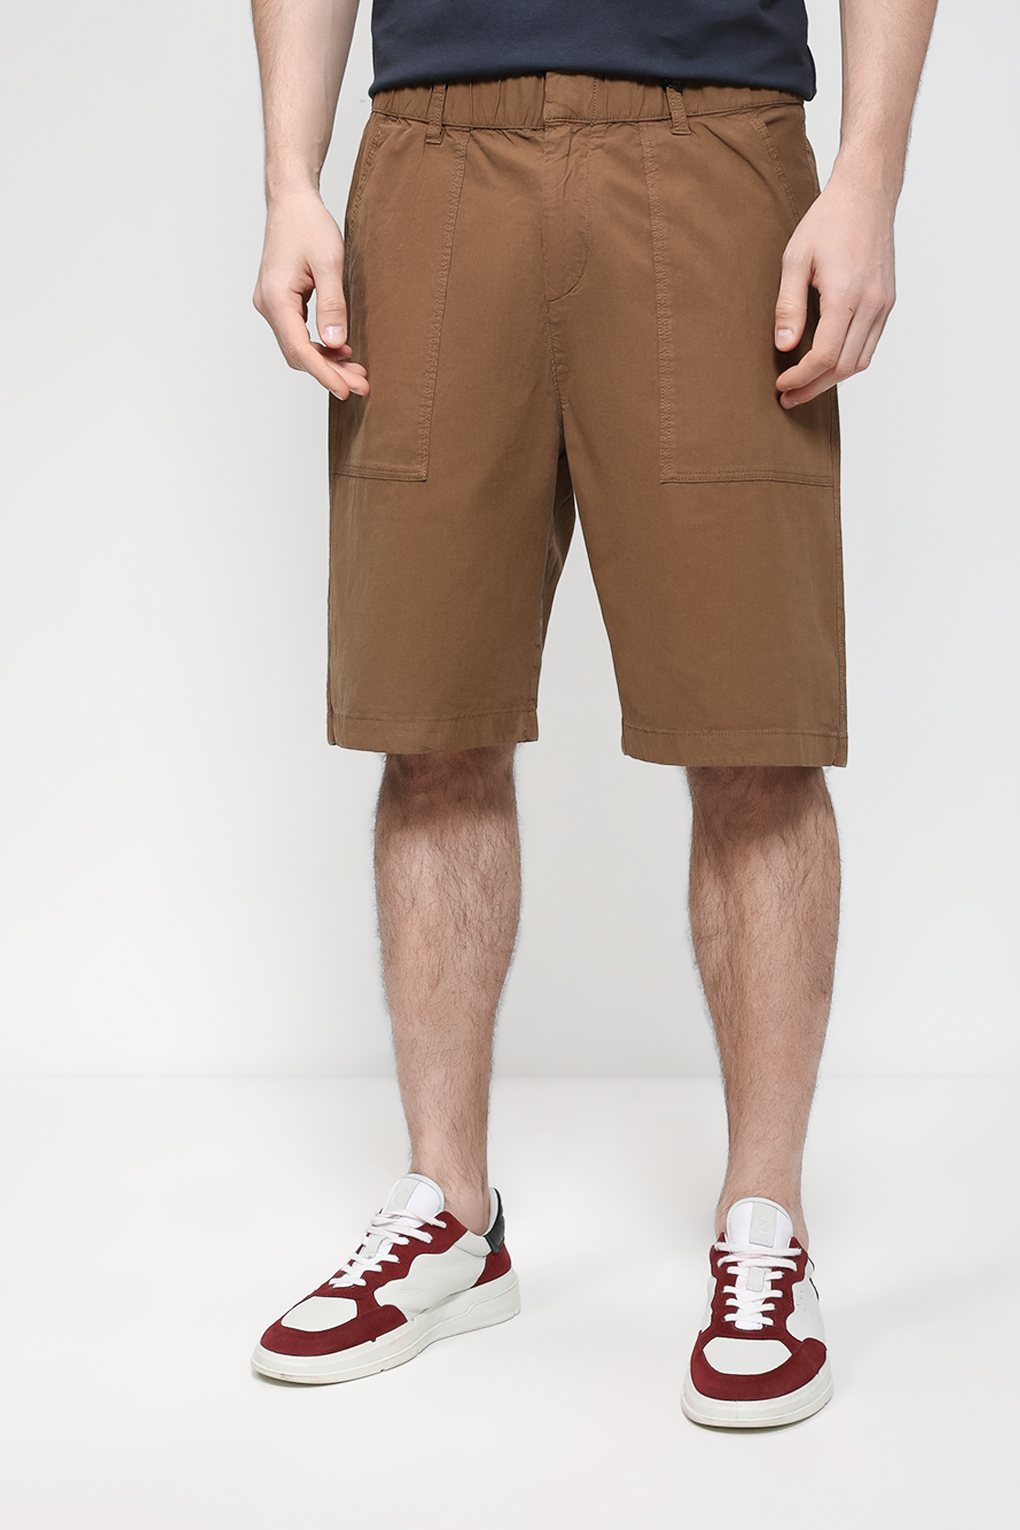 Повседневные шорты мужские Marc O’Polo 323121615054 коричневые 31